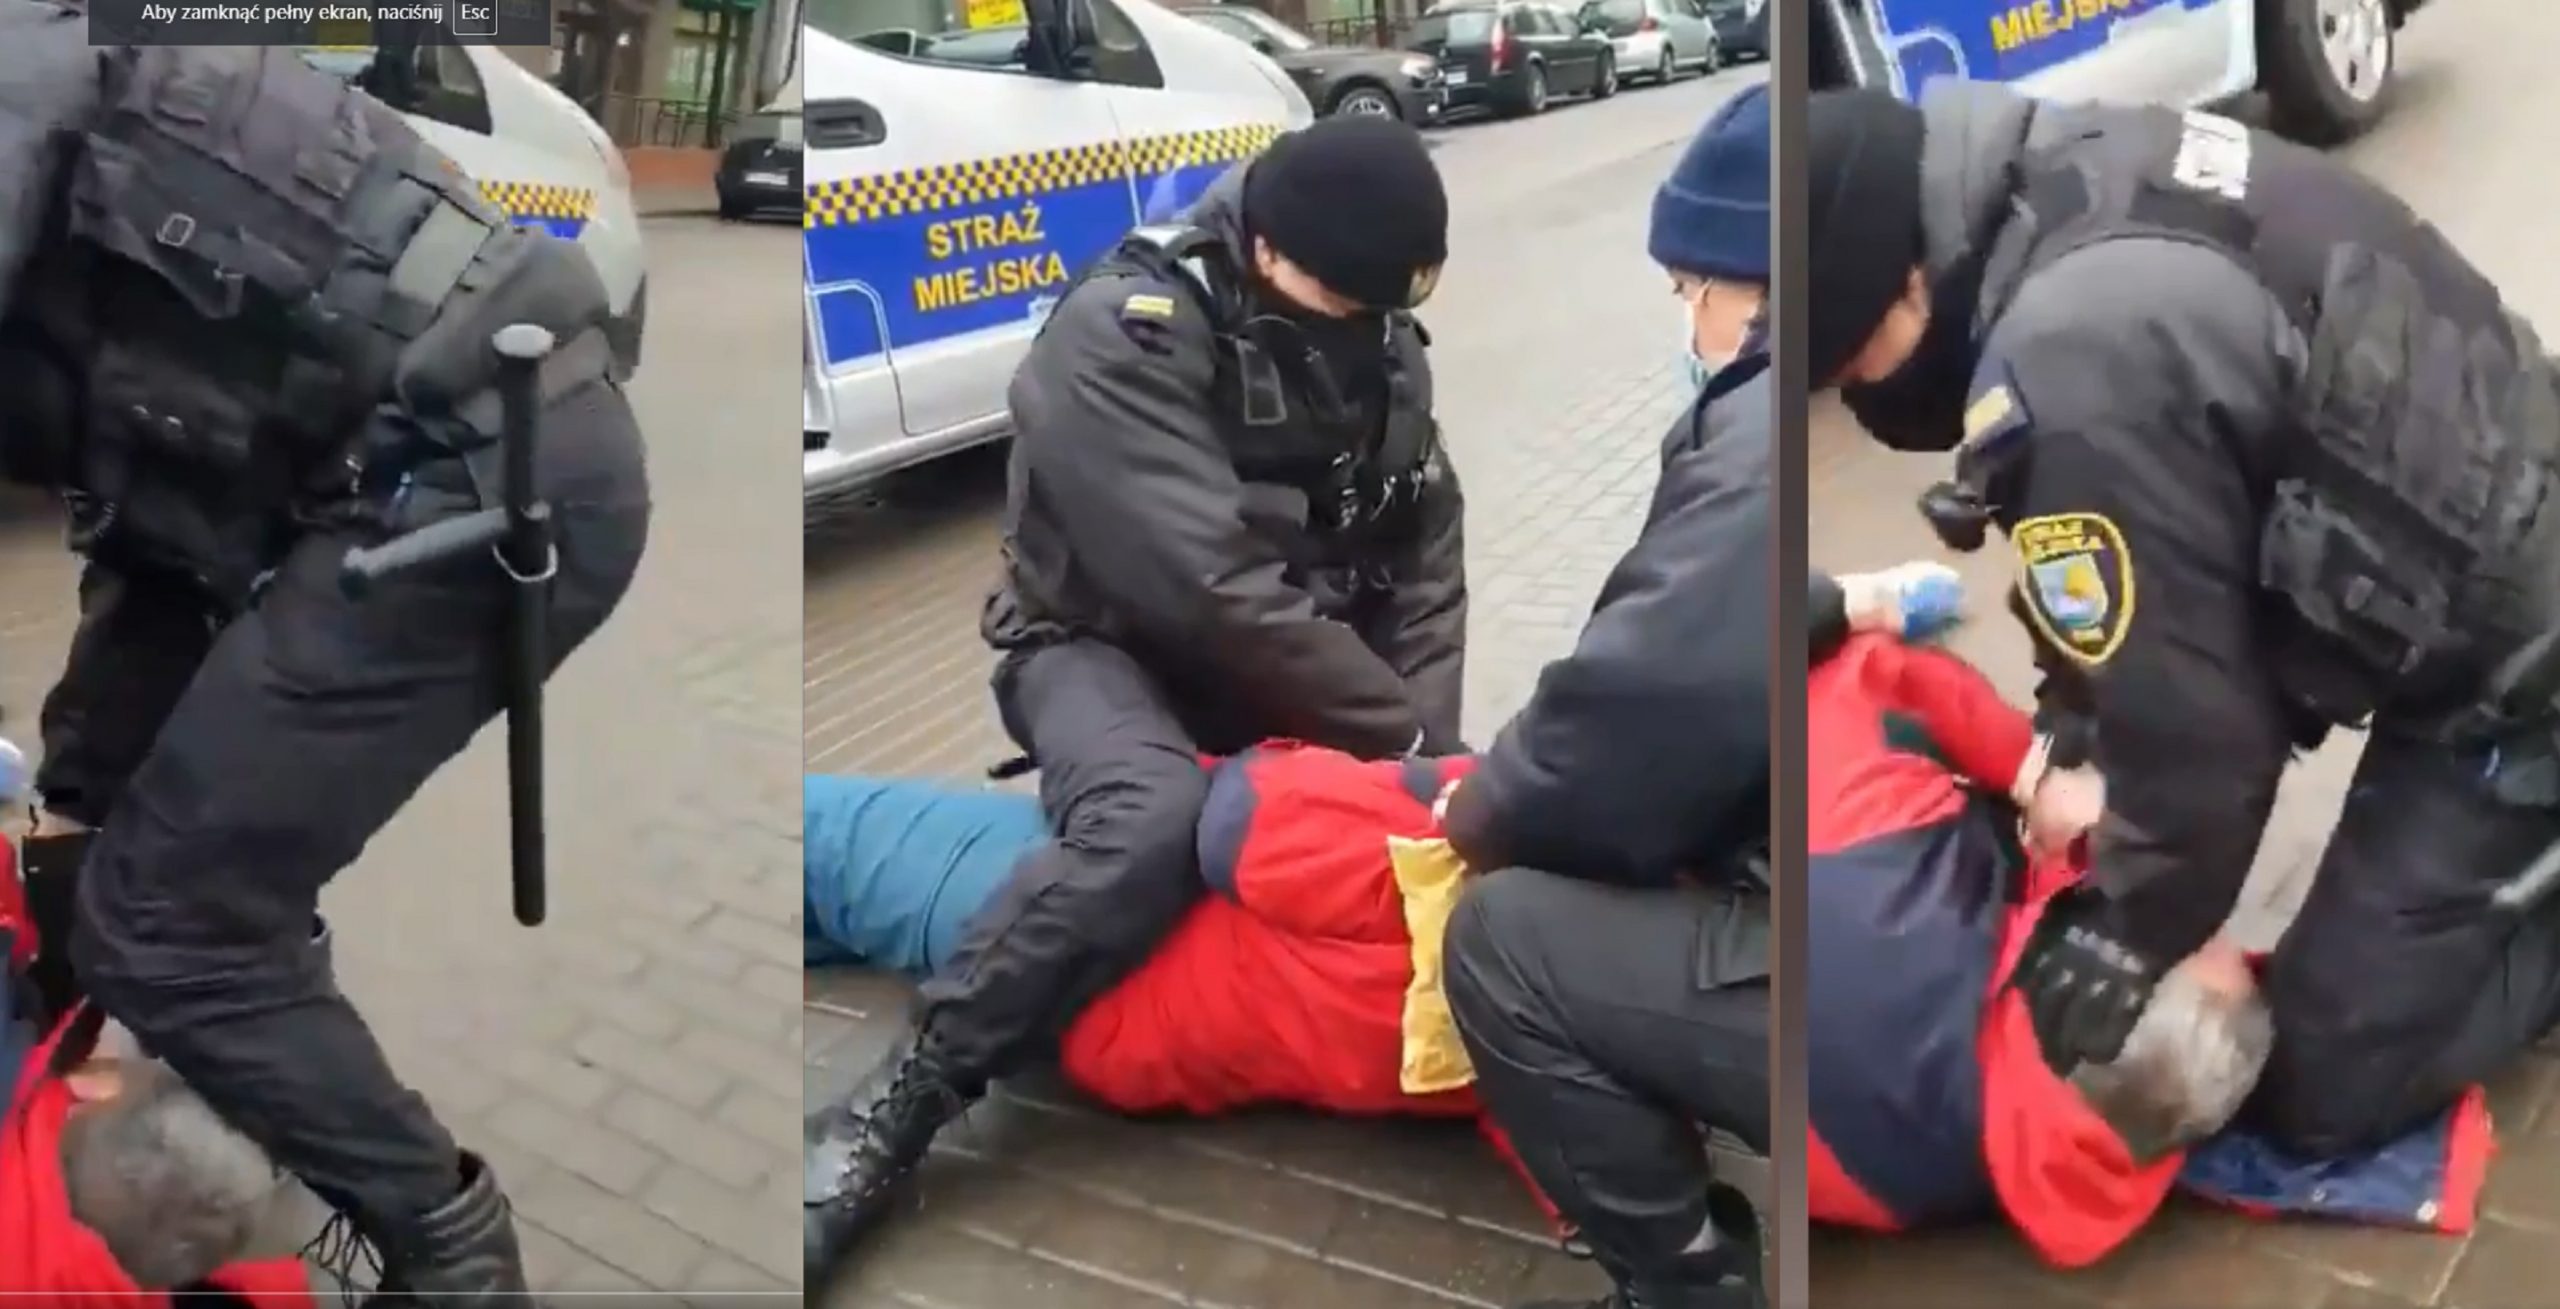 propolski.pl: [video] Straż Miejska spacyfikowała przechodnia za brak maseczki. Stojący obok ludzie nie wytrzymali: "Czemu wy gazujecie człowieka?!"